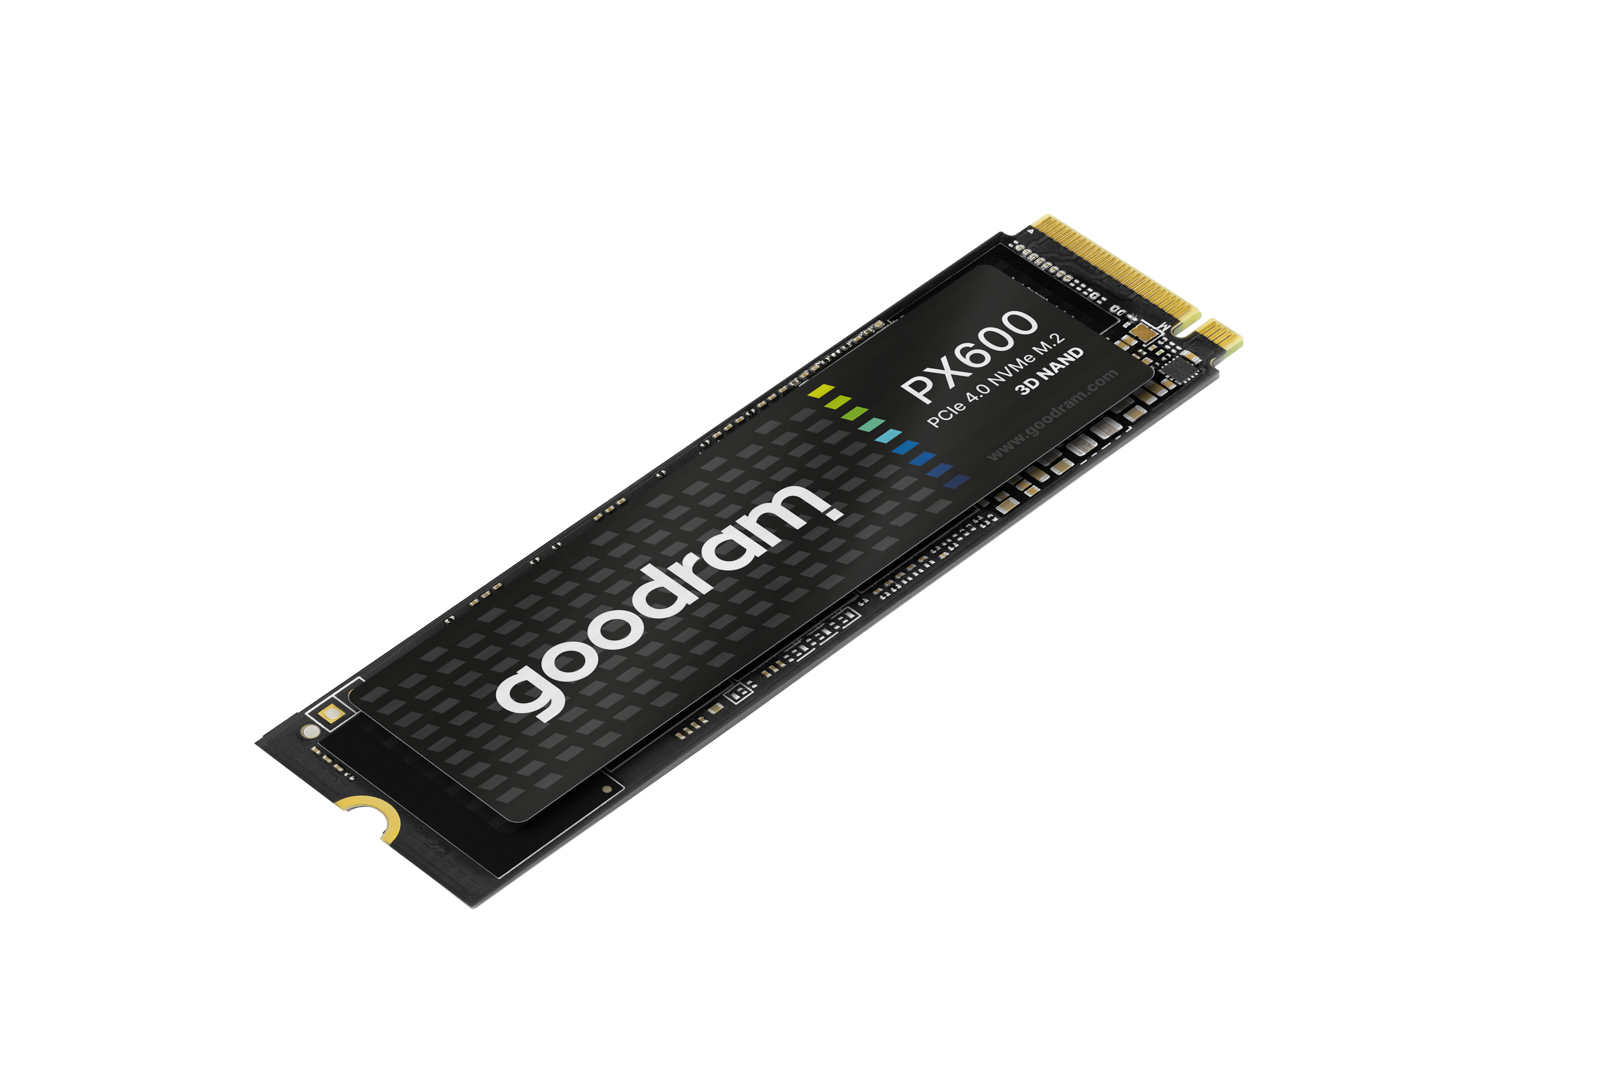 Goodram PX600 SSD, PCIe 4x4, 500 GB, M.2 2280, NVMe, RETAIL